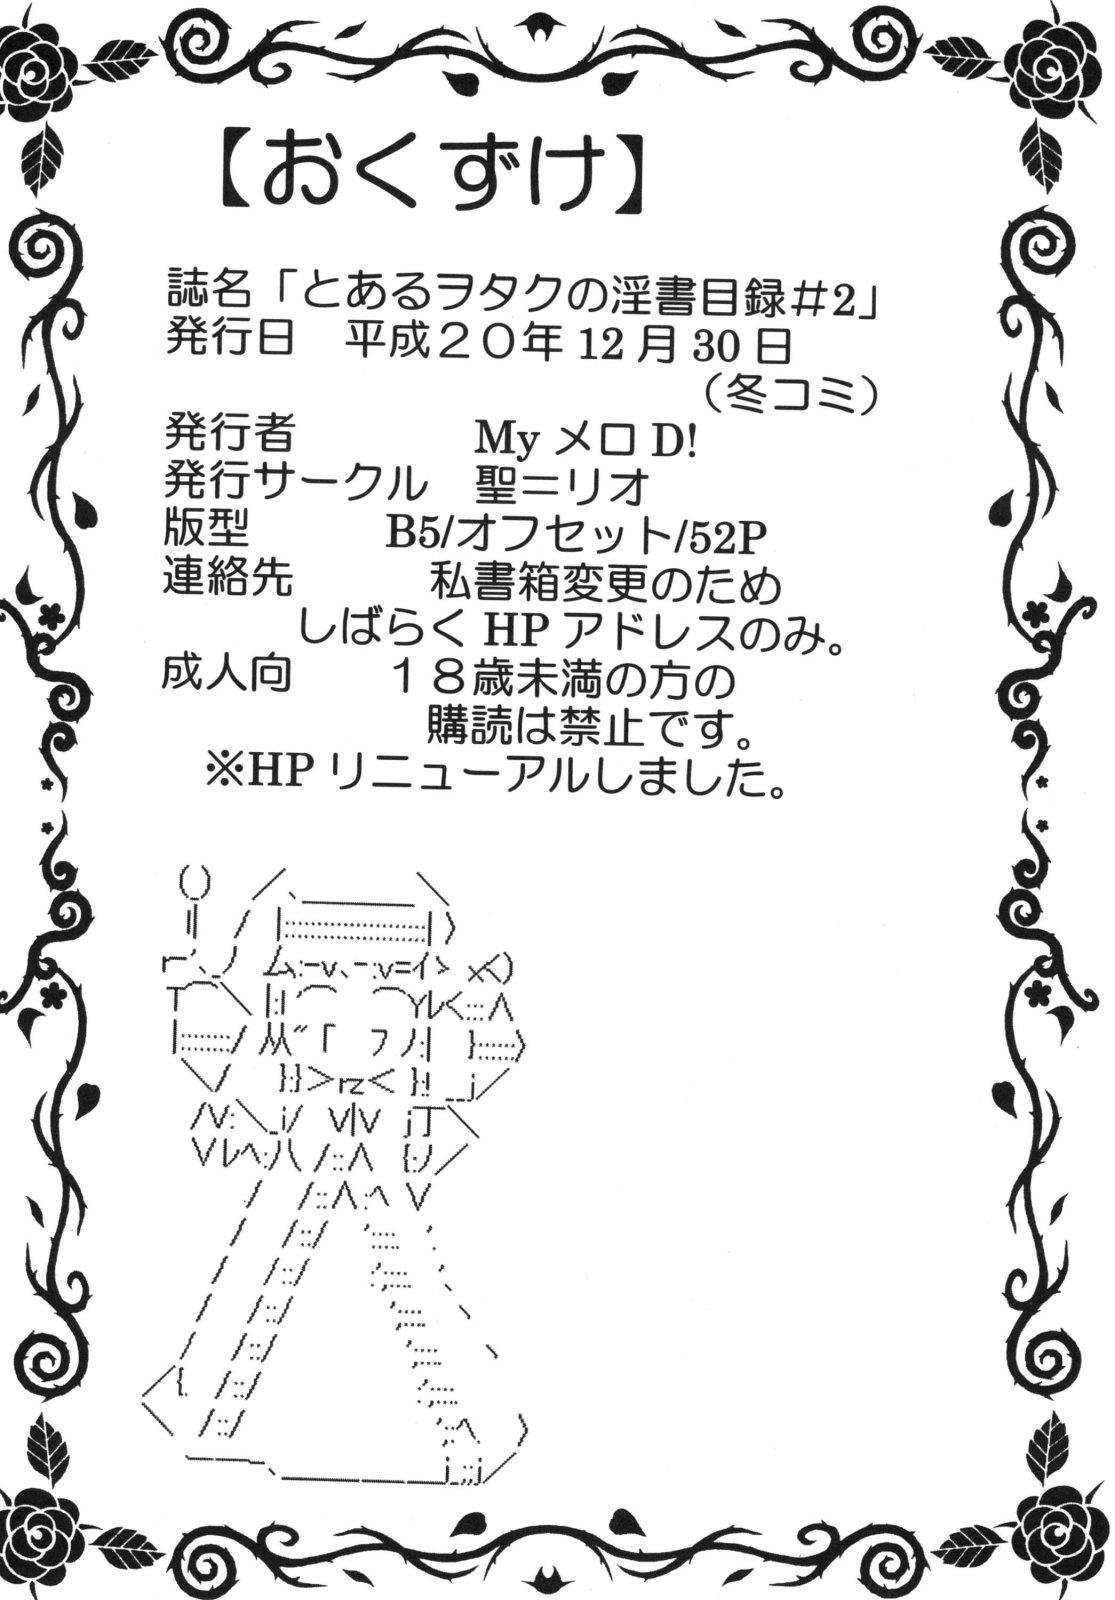 Boob Toaru Otaku no Index #2 - Toaru majutsu no index Bbc - Page 50